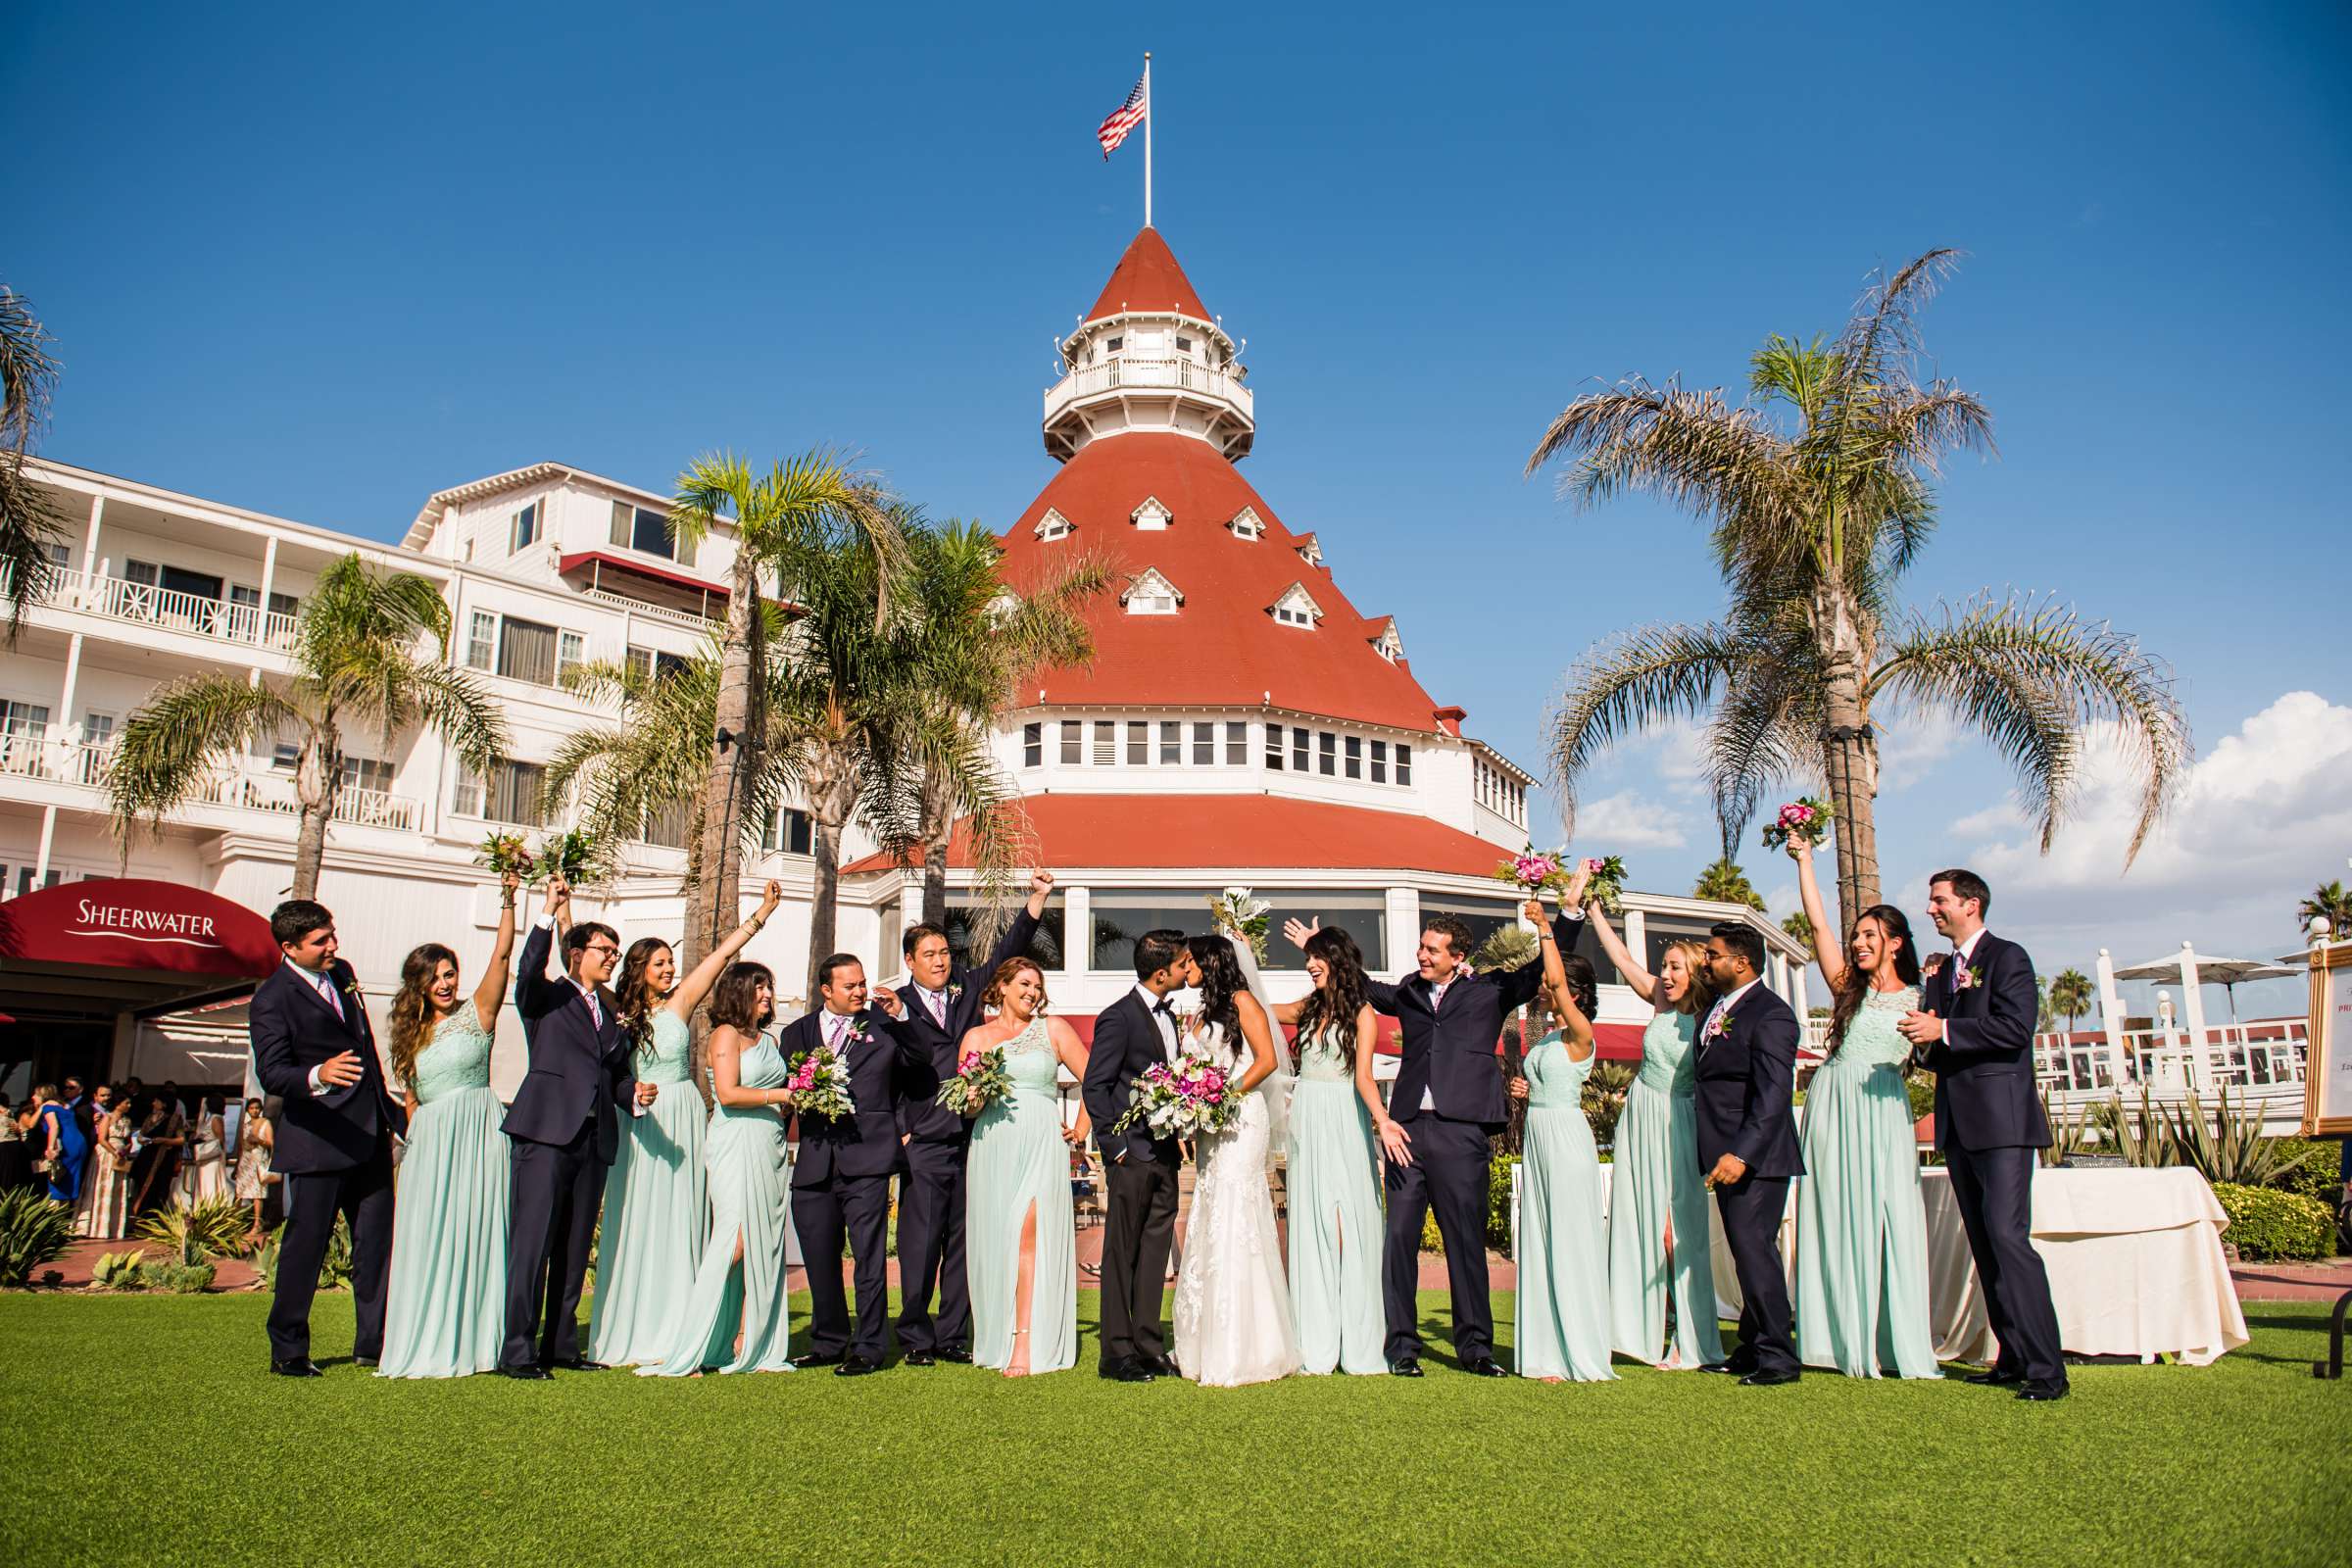 Hotel Del Coronado Wedding, Sabrina and Gehaan Wedding Photo #409104 by True Photography